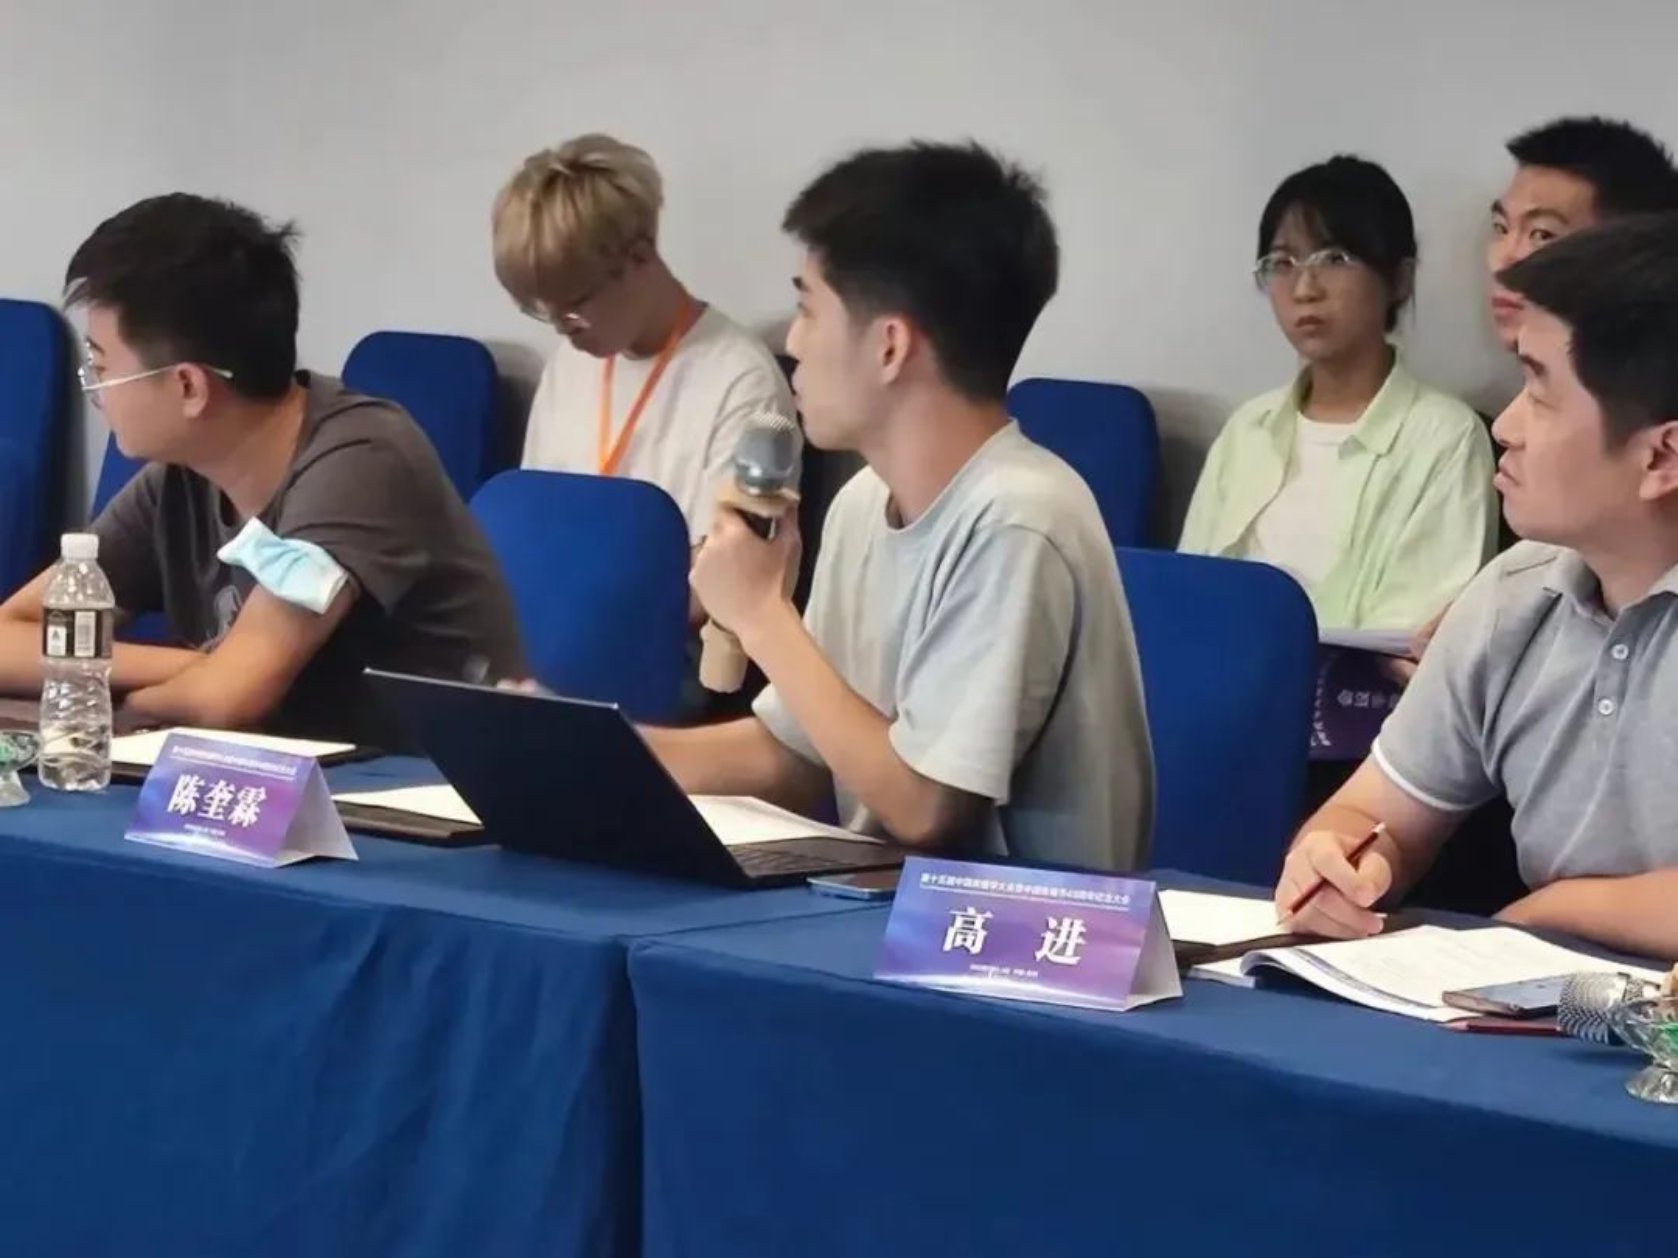 广州南方学院文学与传媒学院教师刘娜、高进与学生陈奎霖参加第十五届中国传播学大会并宣读论文